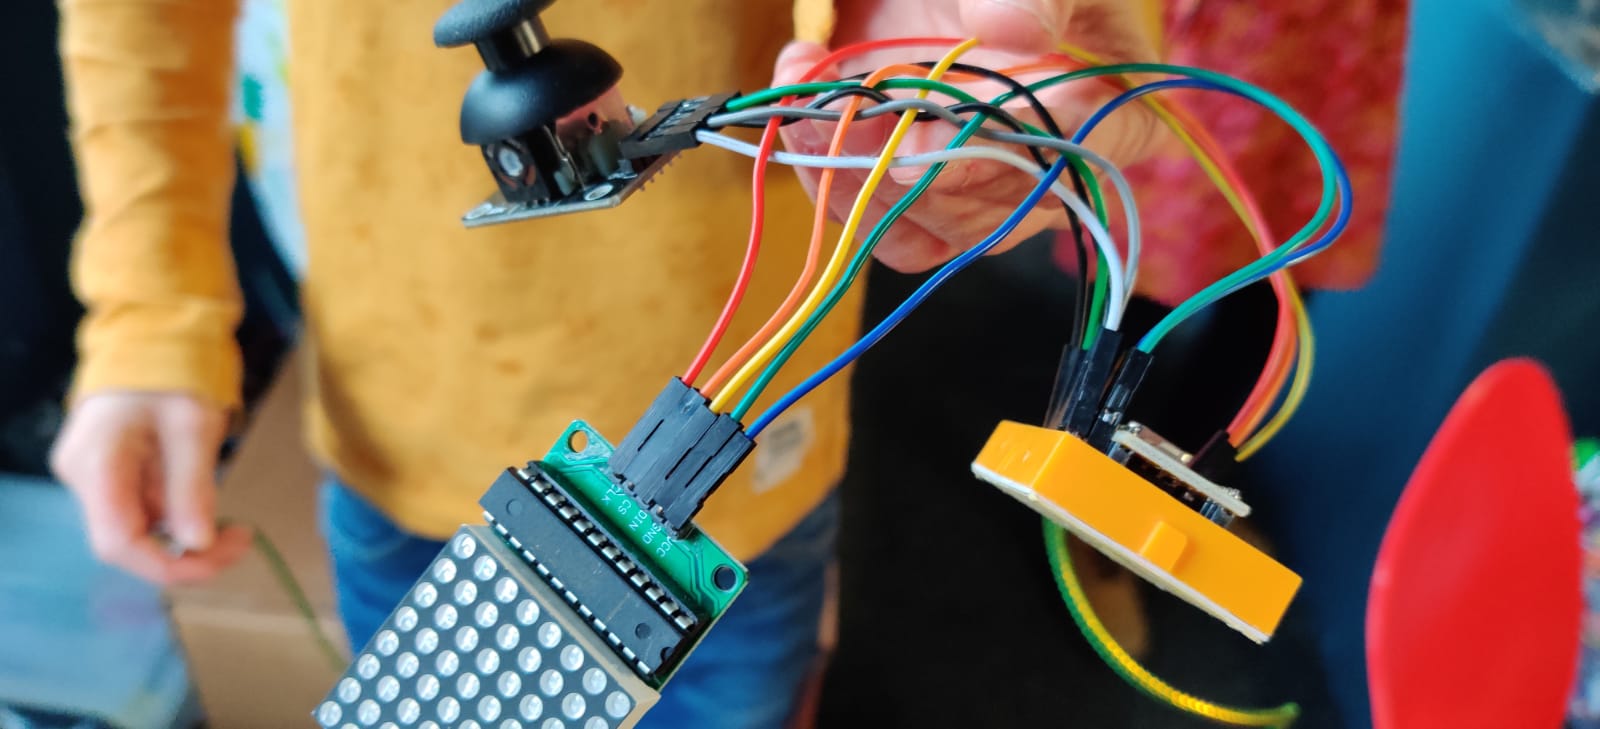 Lab – Arduino Nano programmeren met LedMatrix en joystick